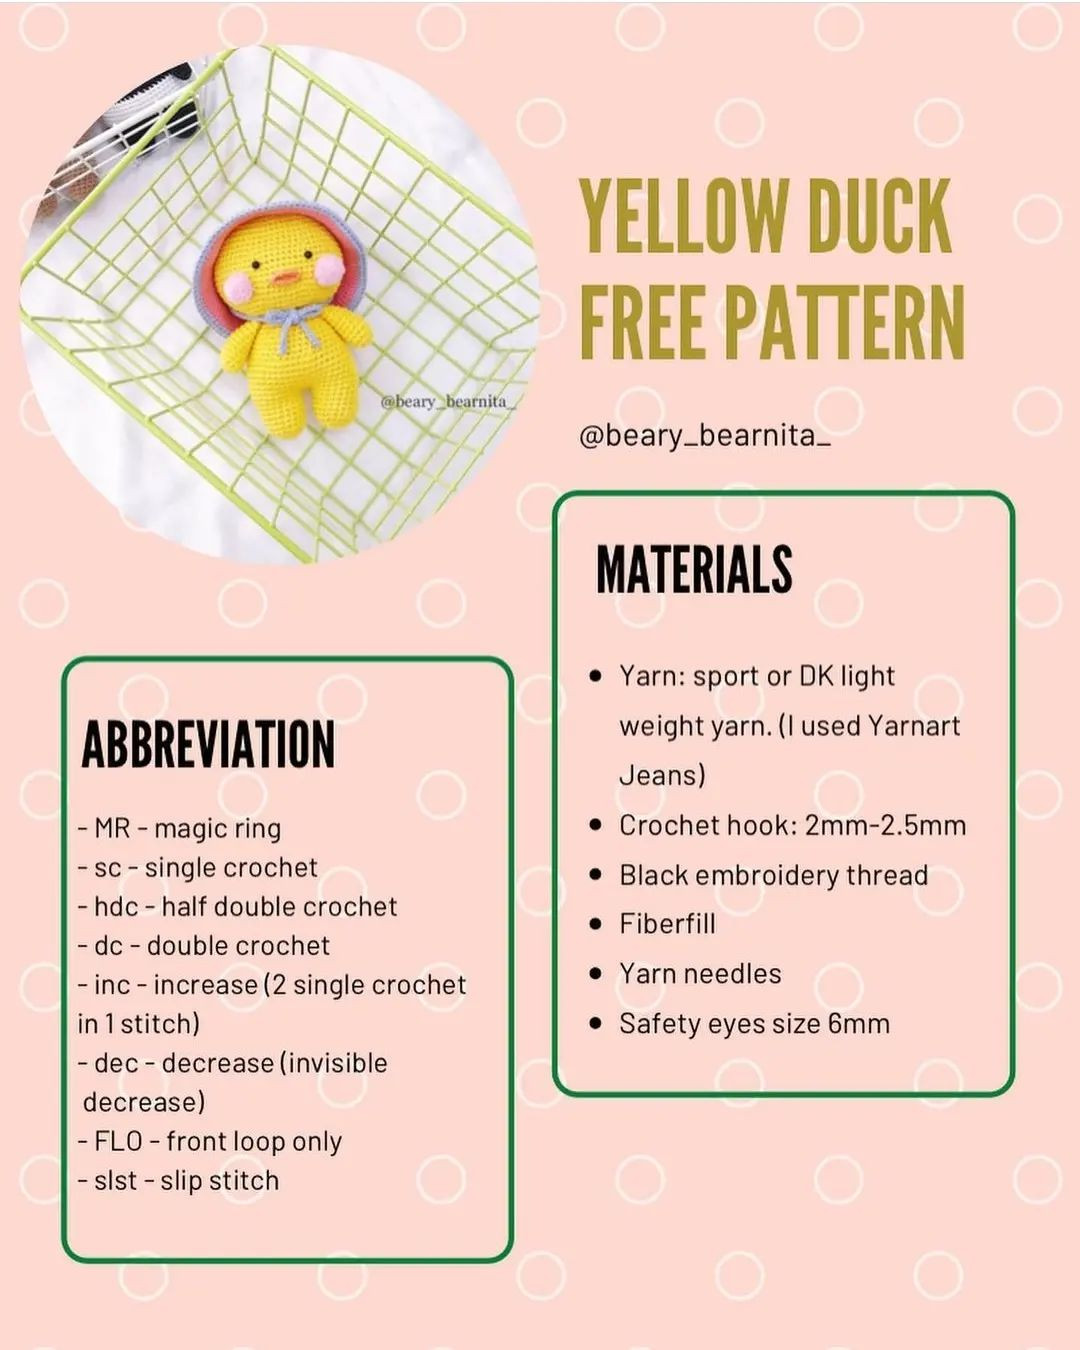 Yellow duck crochet pattern wearing a wide brim hat